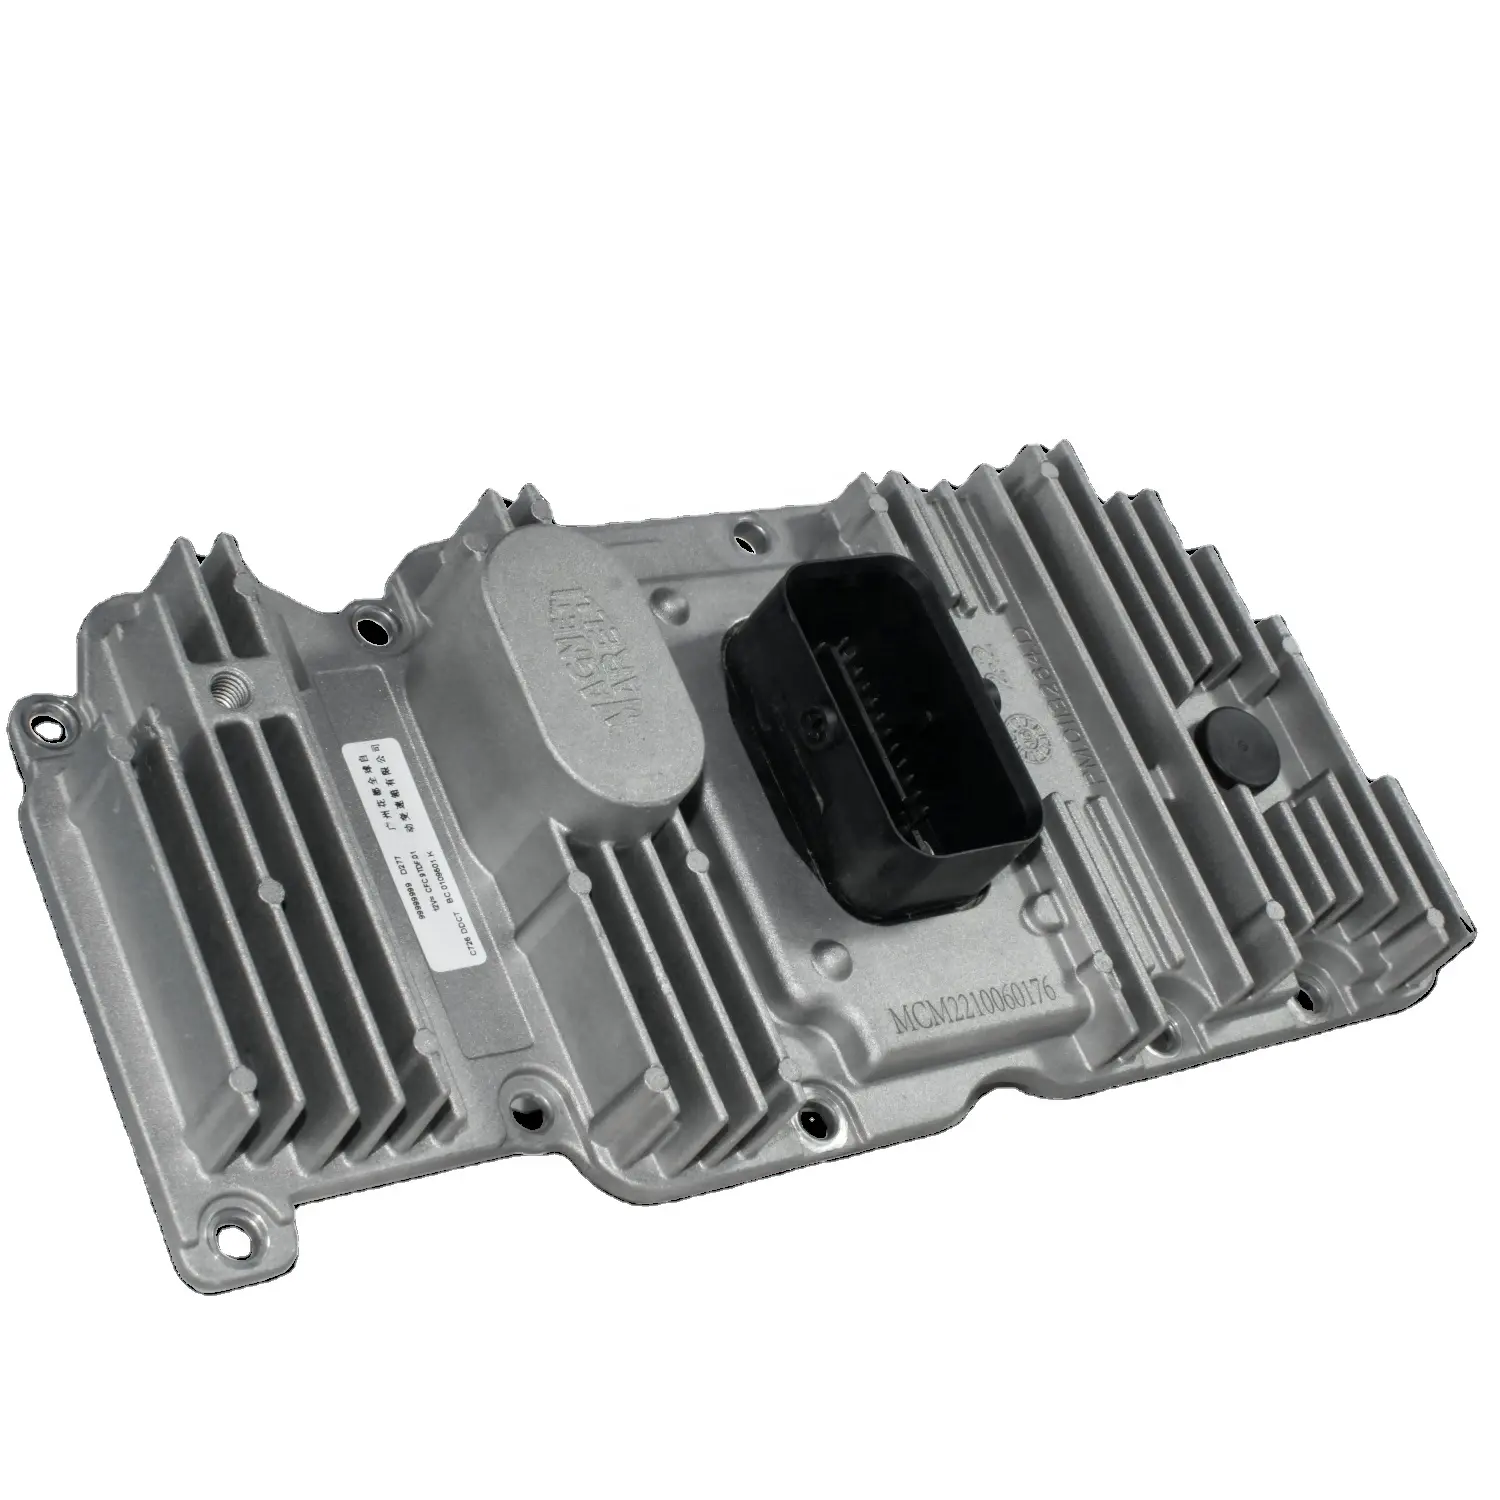 WWT Remanufactured TCU Getriebes teuer gerät 1310003-BADT55 Getriebe teile Auto Tranmssion System C725 MCM für G-AC